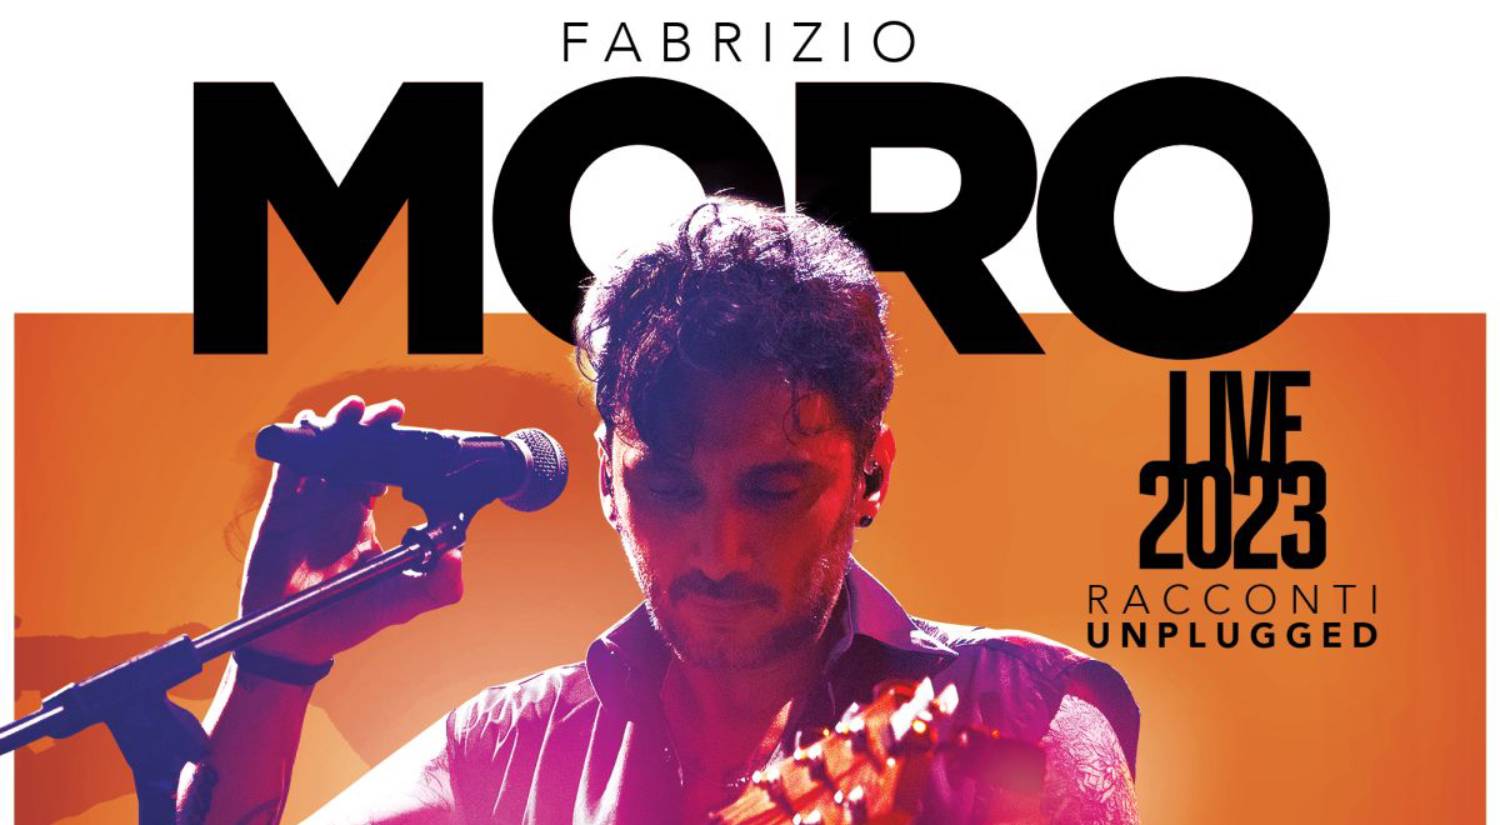 Fabrizio Moro torna in tour da marzo con live 2023, Racconti unplugged